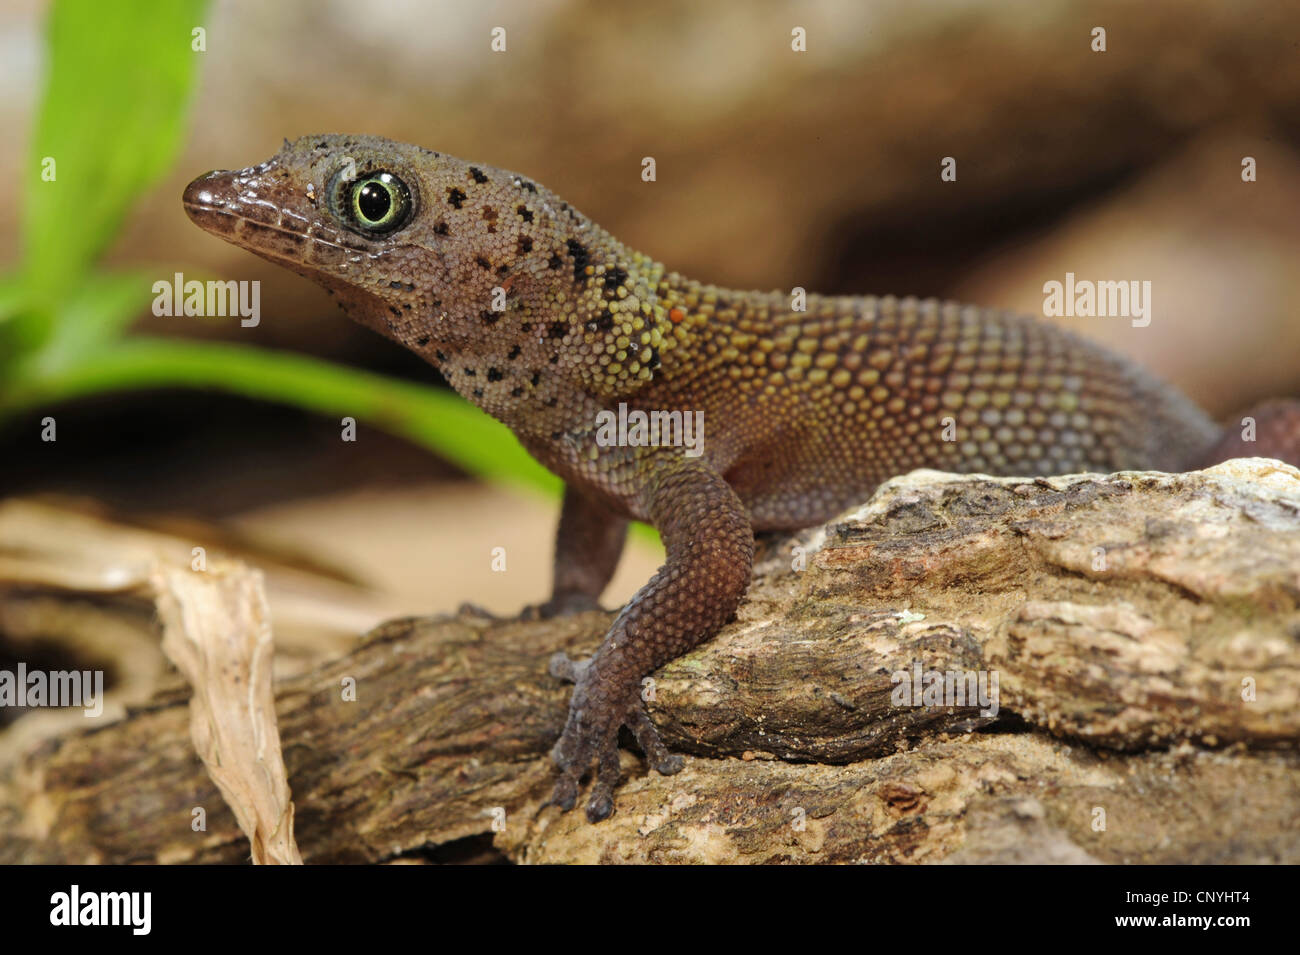 Bay Island Least Gecko, Bay Island dwarf gecko (Sphaerodactylus rosaurae), sitting on a branch, Honduras, Roatan, Bay Islands Stock Photo